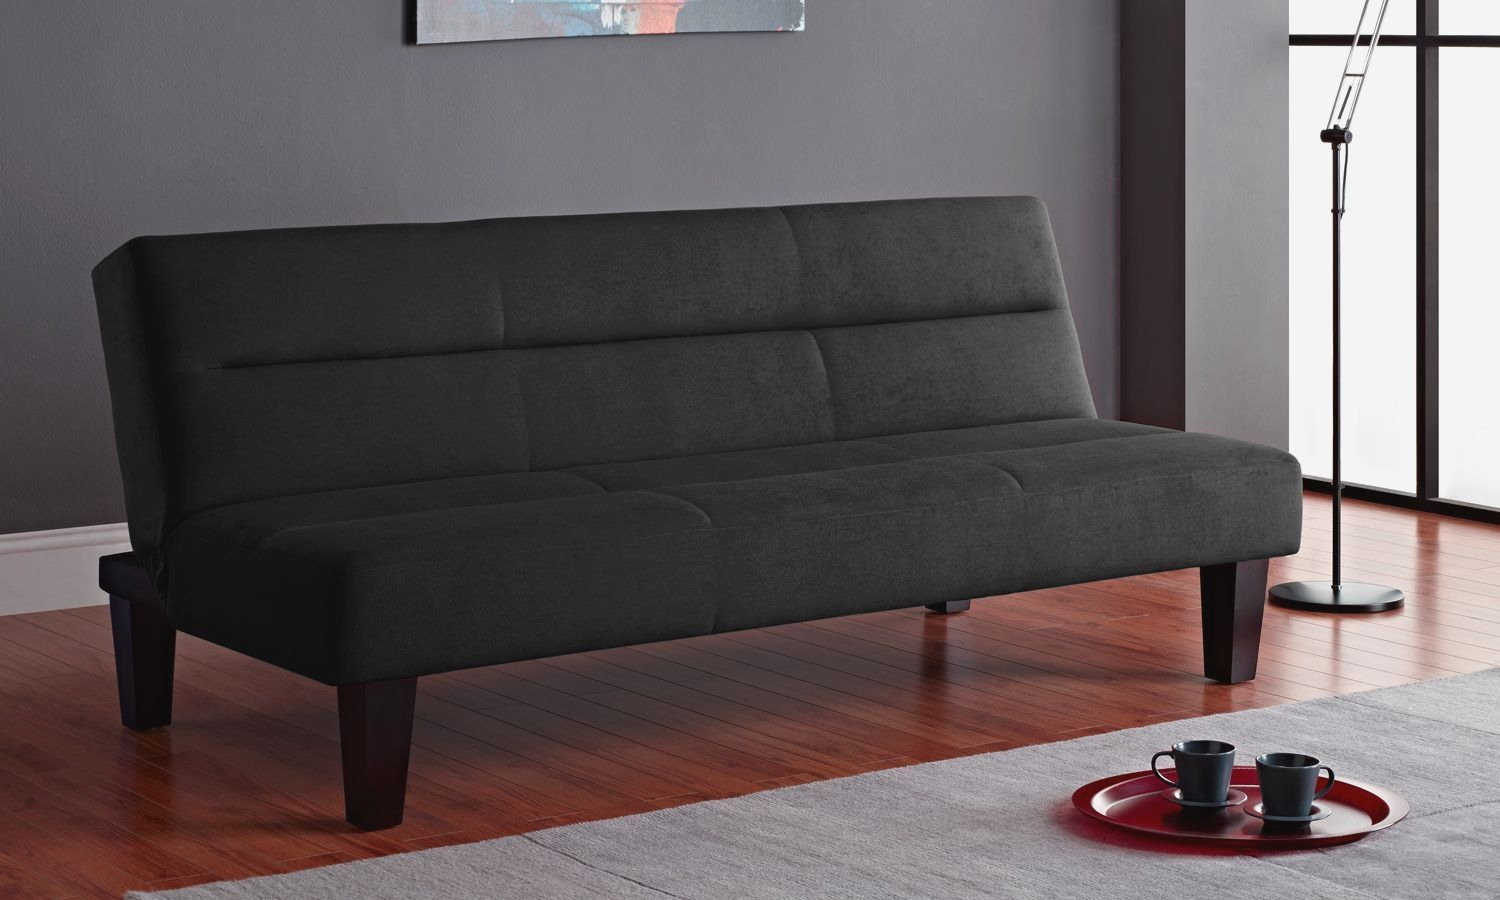 kmart multi functional sofa bed